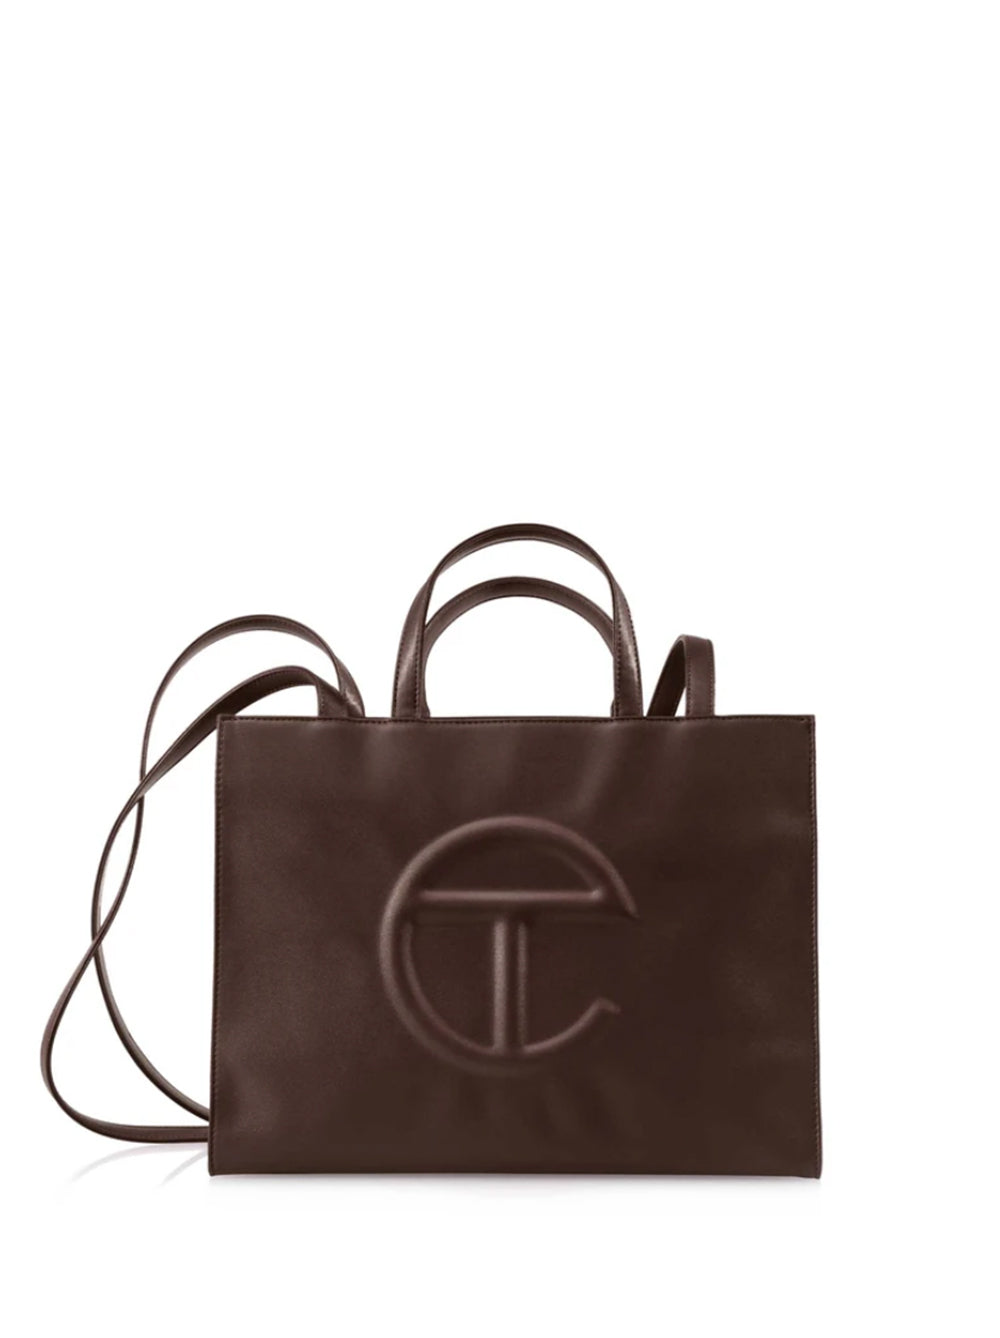 Telfar Medium Chocolate Shopping Bag